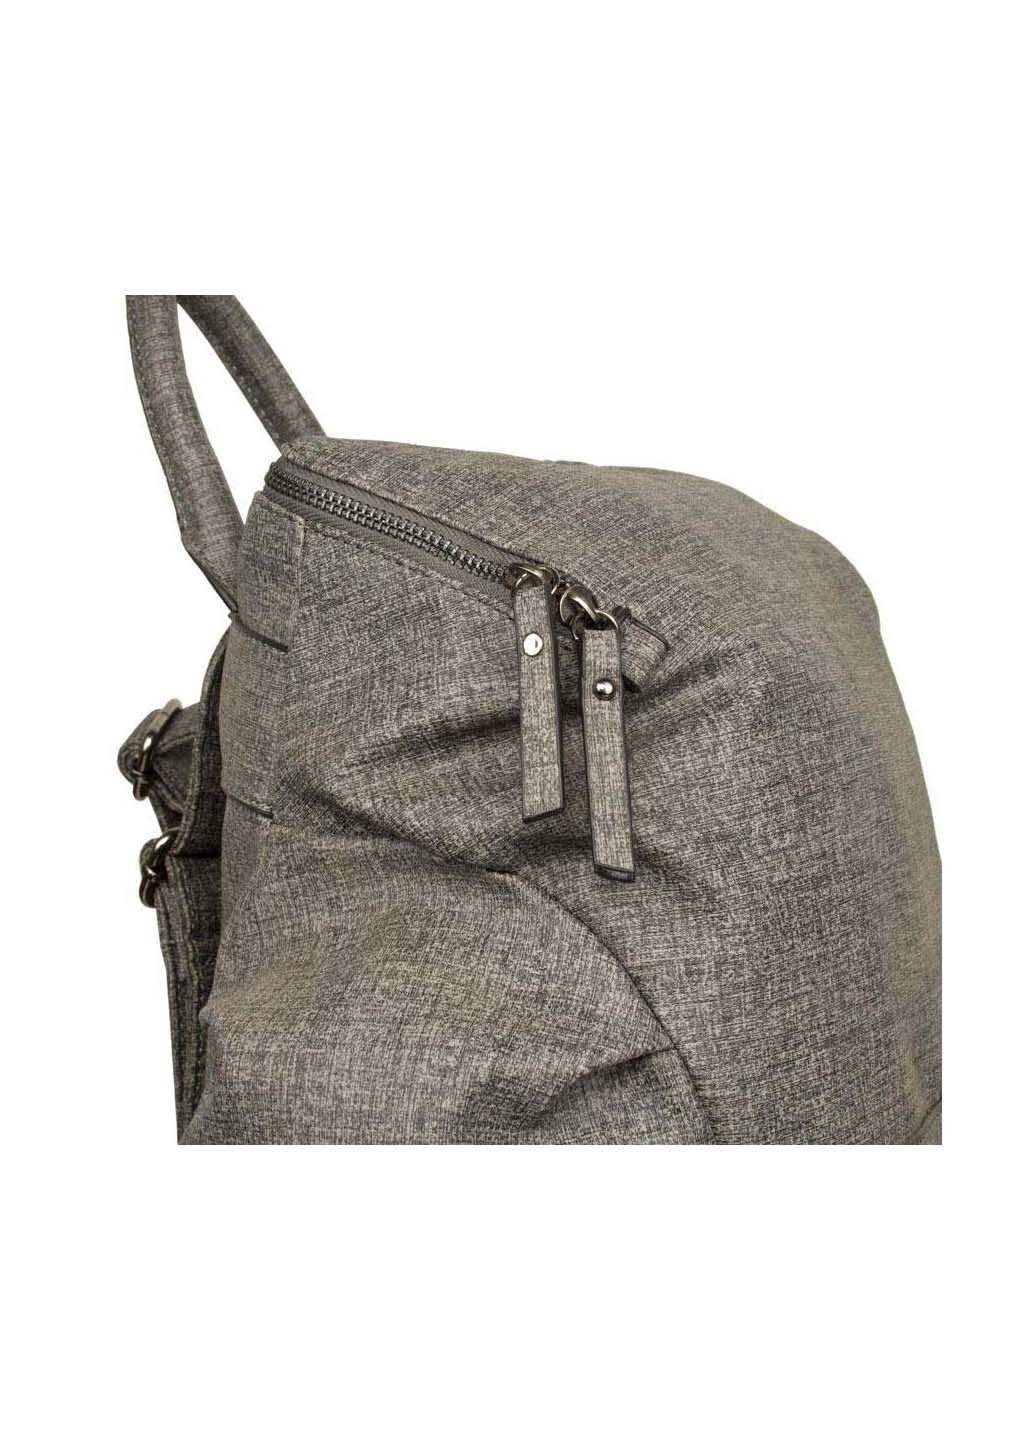 Рюкзак Backpack (186441816)